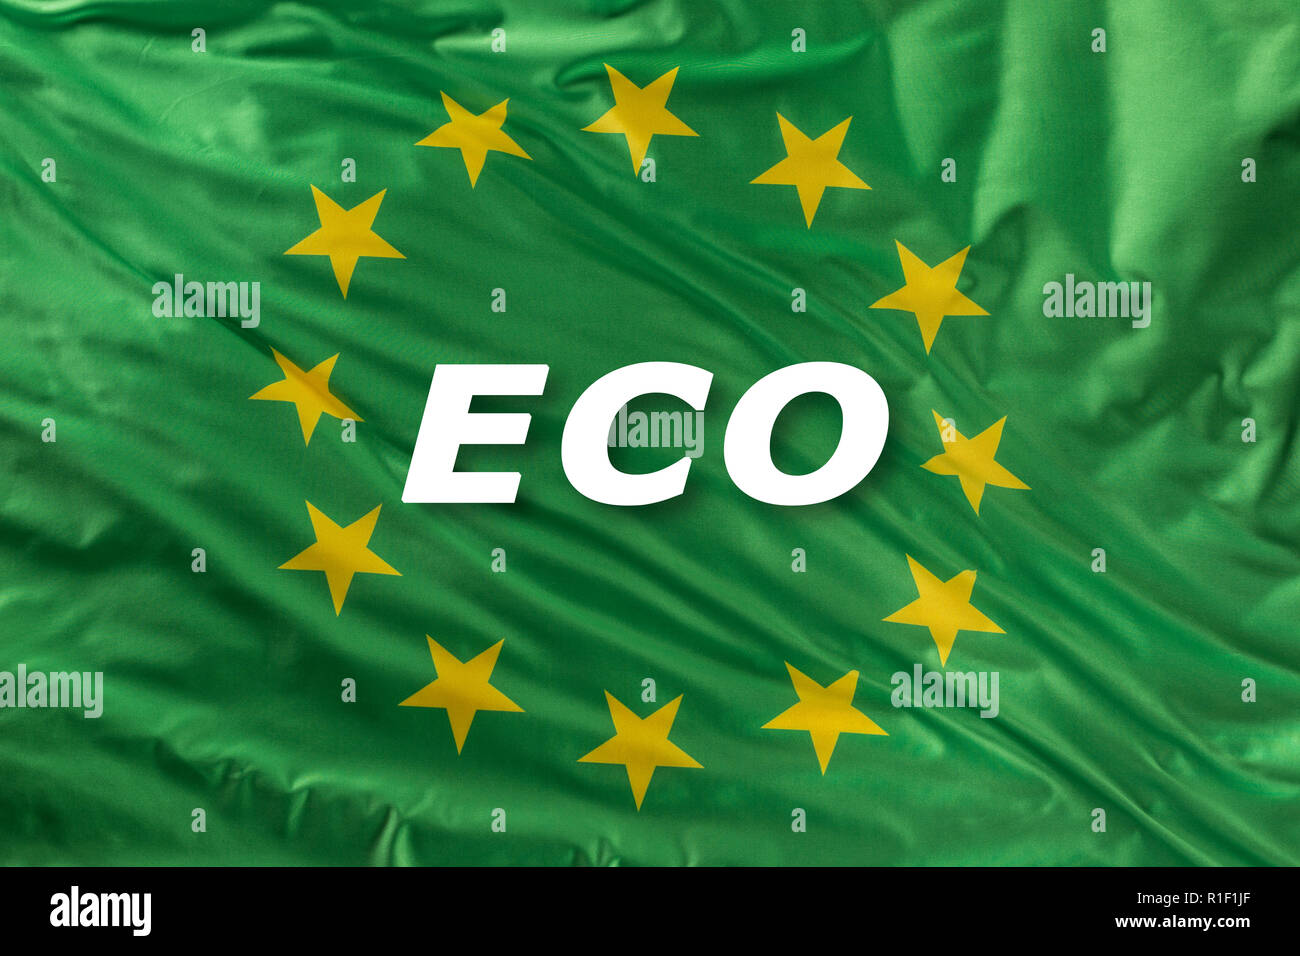 Drapeau de l'Union européenne verte en tant que marque d'alimentation bio bio ou l'écologie. Banque D'Images